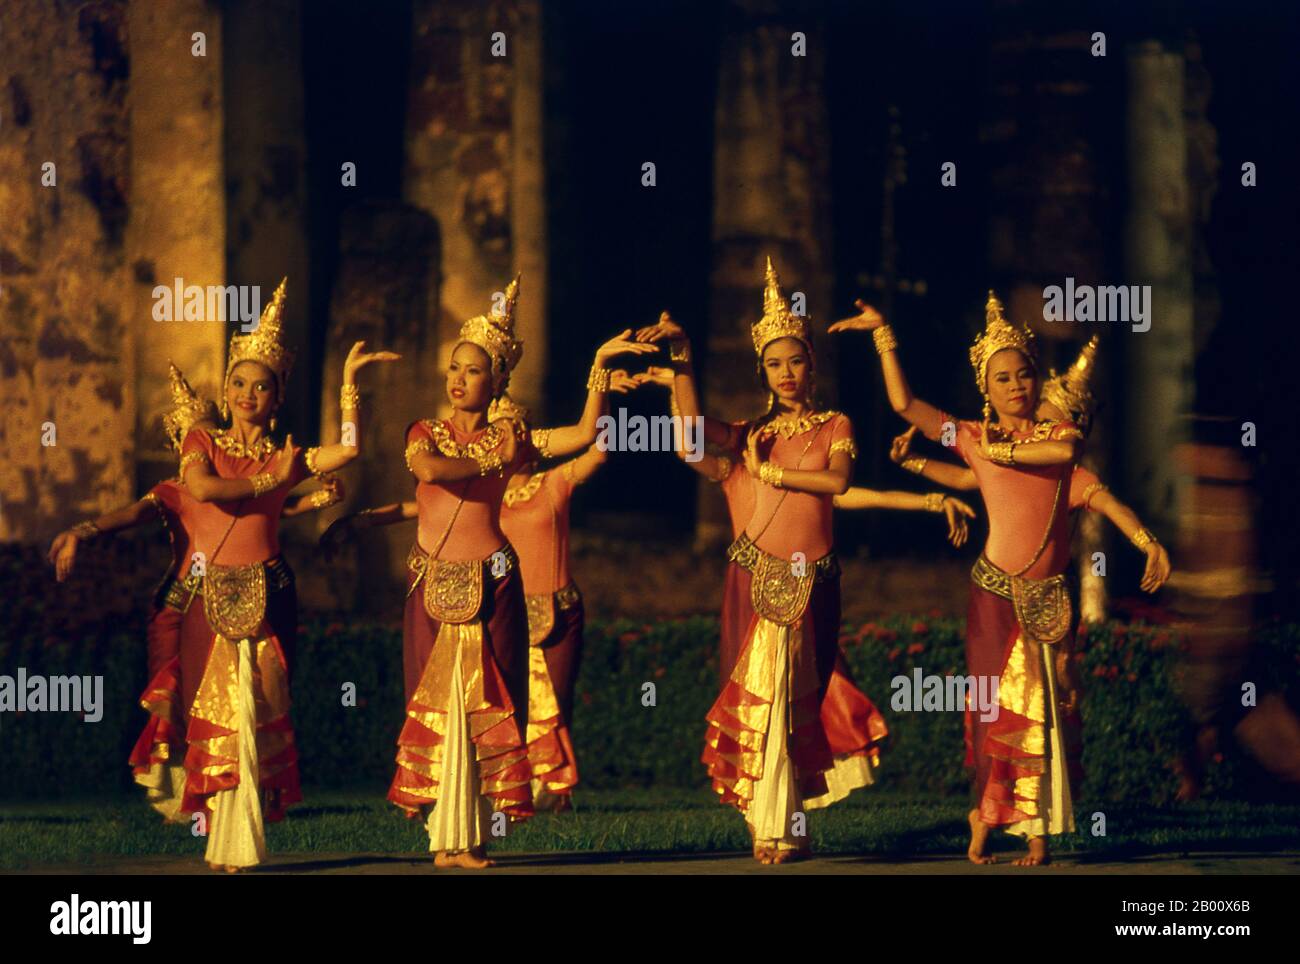 Thailand: Traditionelle thailändische Tänzer bei der Licht- und Soundshow für das alljährliche Loy Krathong Festival, Sukhothai Historical Park. Loy Krathong (oder Loi Krathong) ist ein jährlich im traditionellen Mondkalender in ganz Thailand und bestimmten Teilen von Laos während des Vollmondes des 12. Monats stattfindendes Fest. Sukhothai, was wörtlich "Dawn of Happiness" bedeutet, war die Hauptstadt des Sukhothai-Königreichs und wurde 1238 gegründet. Es war die Hauptstadt des thailändischen Reiches für etwa 140 Jahre. Stockfoto